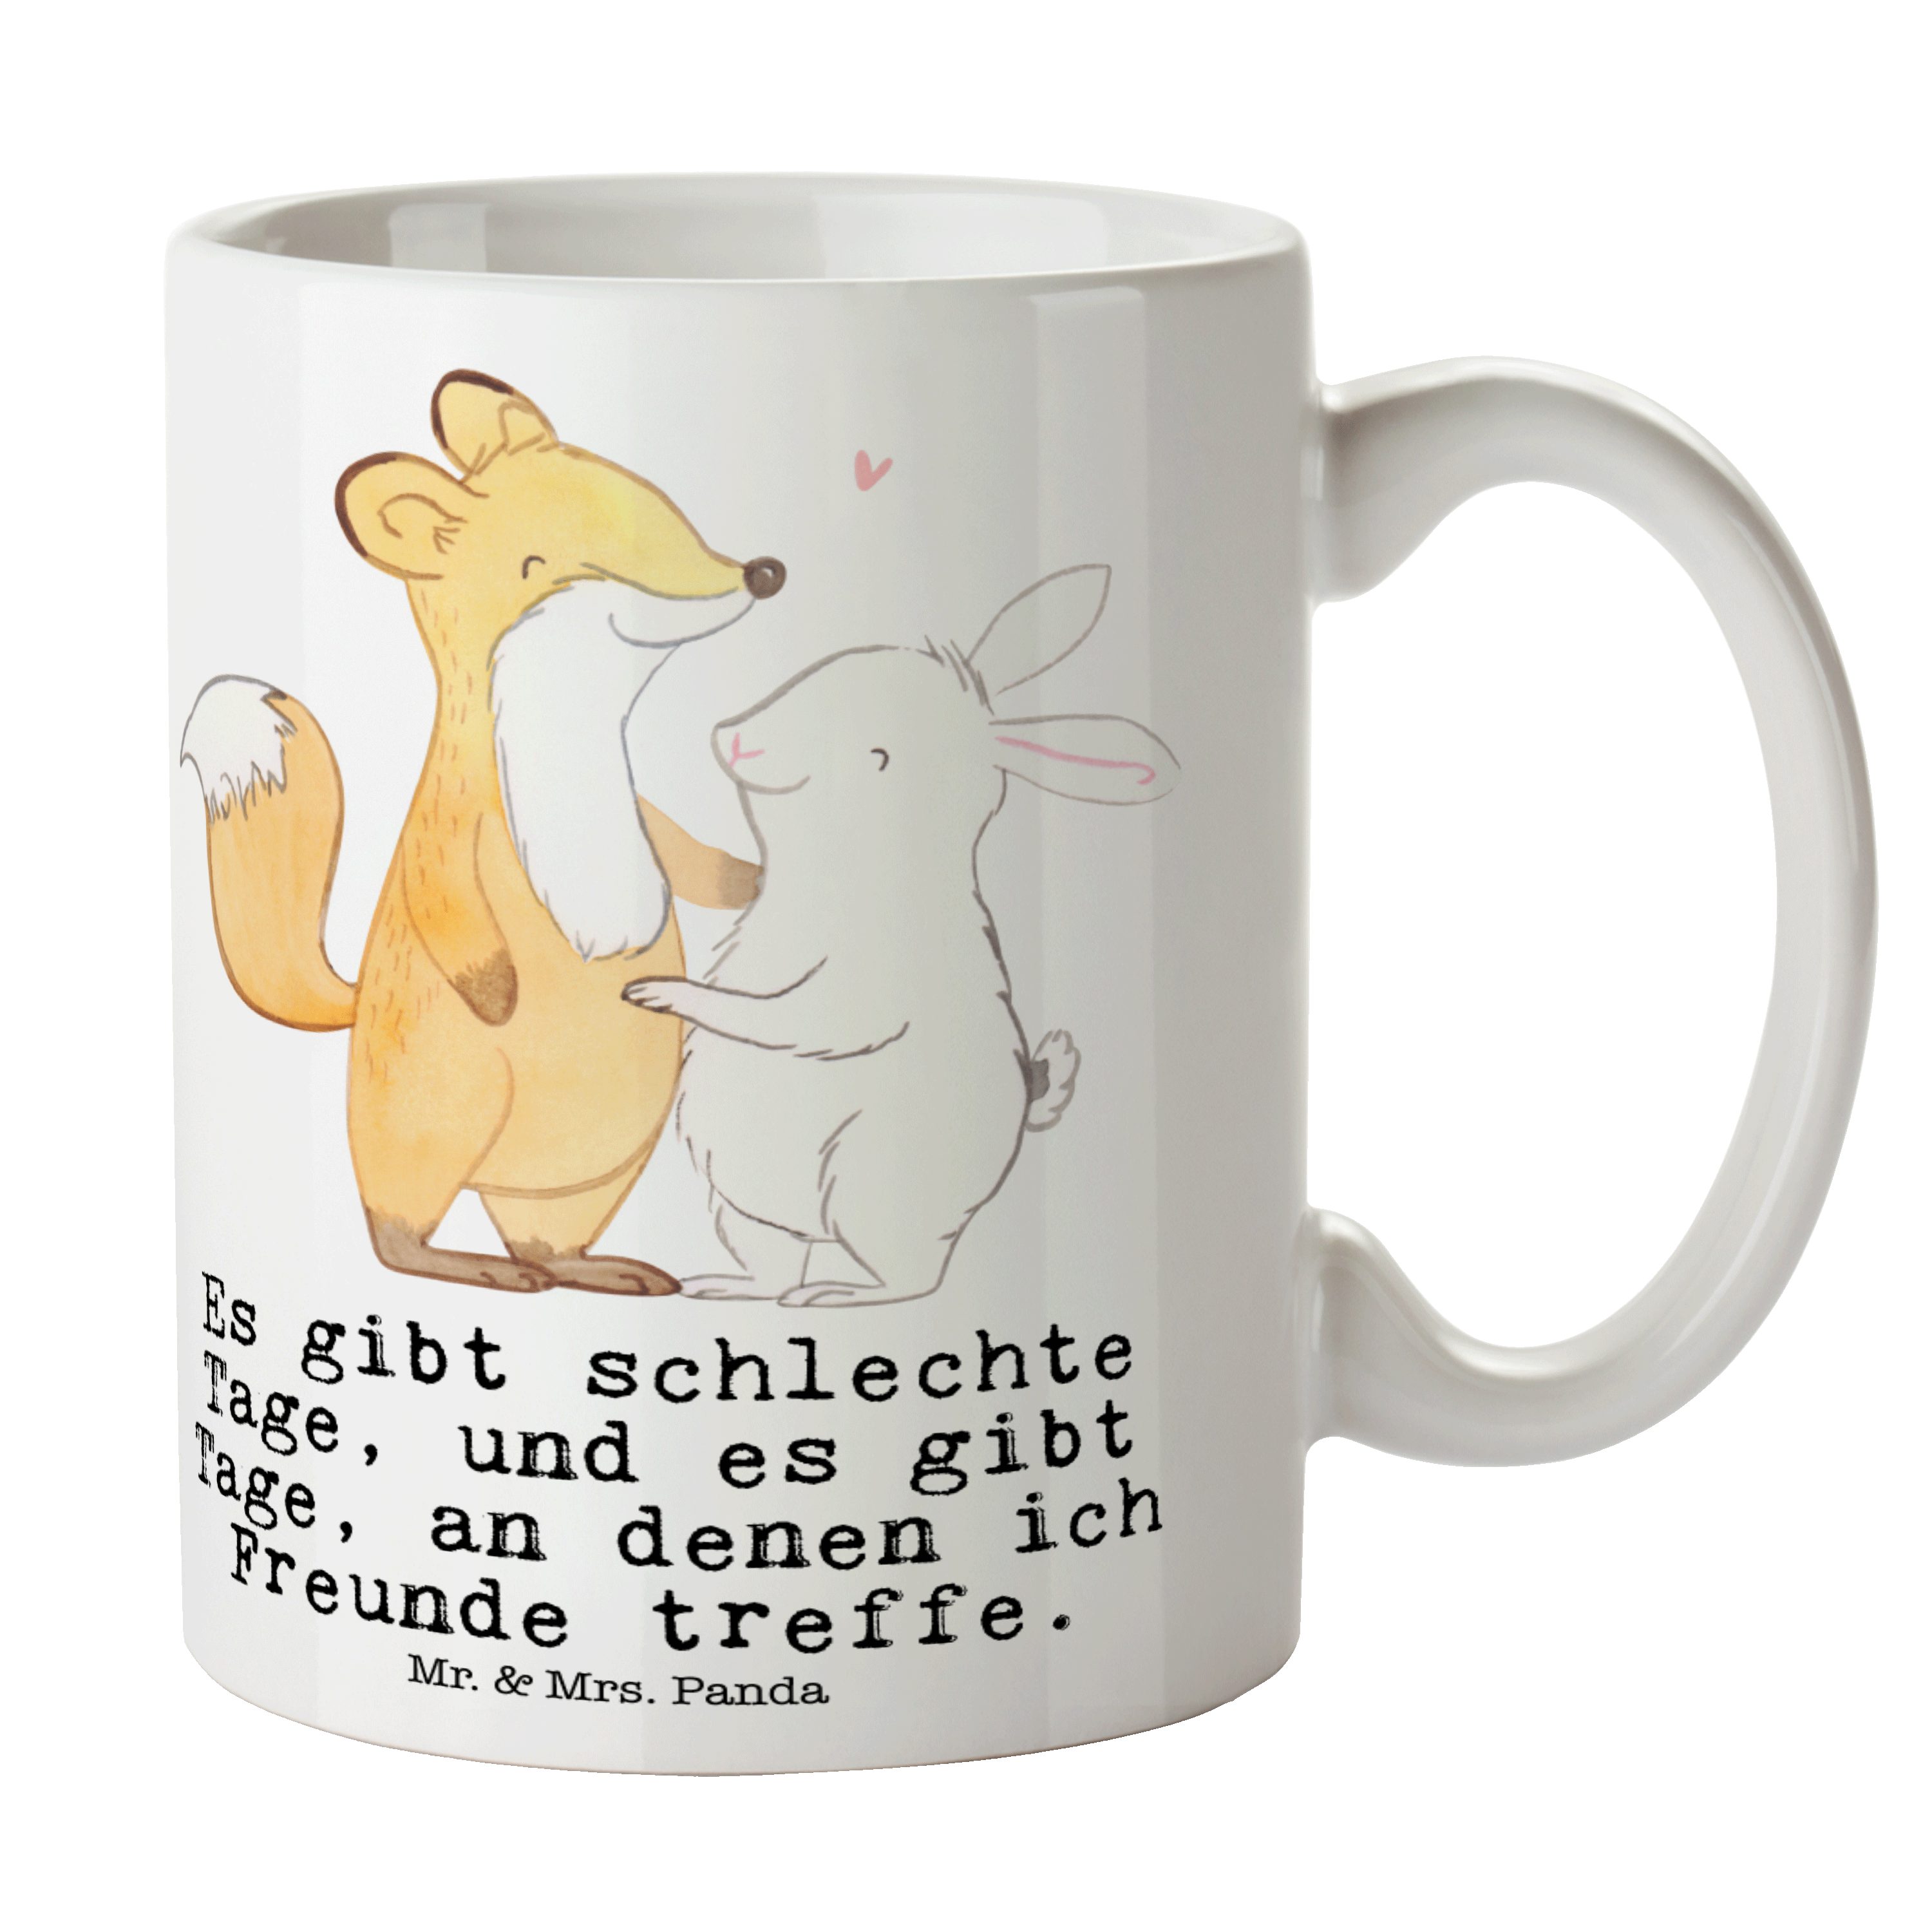 Mr. & Mrs. Panda Tasse Fuchs Hase Freunde treffen Tage - Weiß - Geschenk, Keramiktasse, Kaff, Keramik